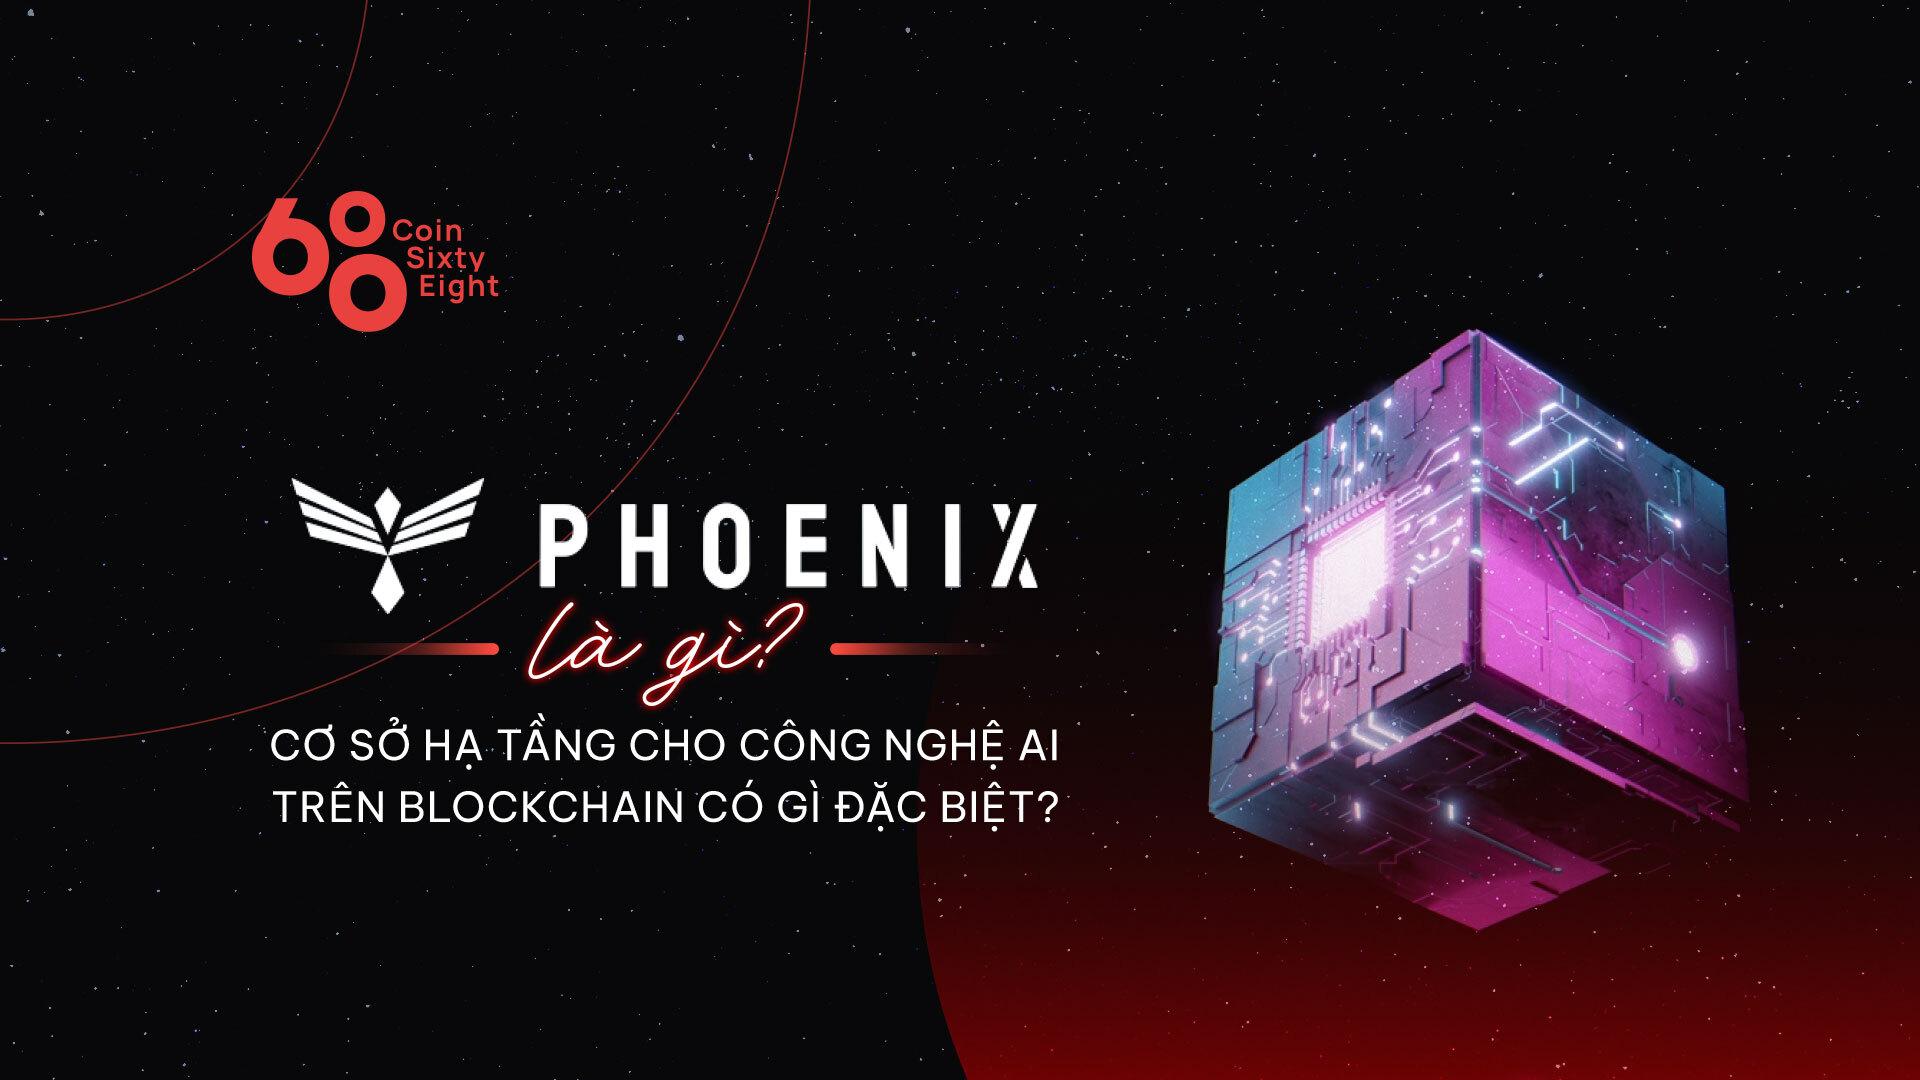 phoenix-global-la-gi-co-so-ha-tang-cho-cong-nghe-ai-tren-blockchain-co-gi-dac-biet